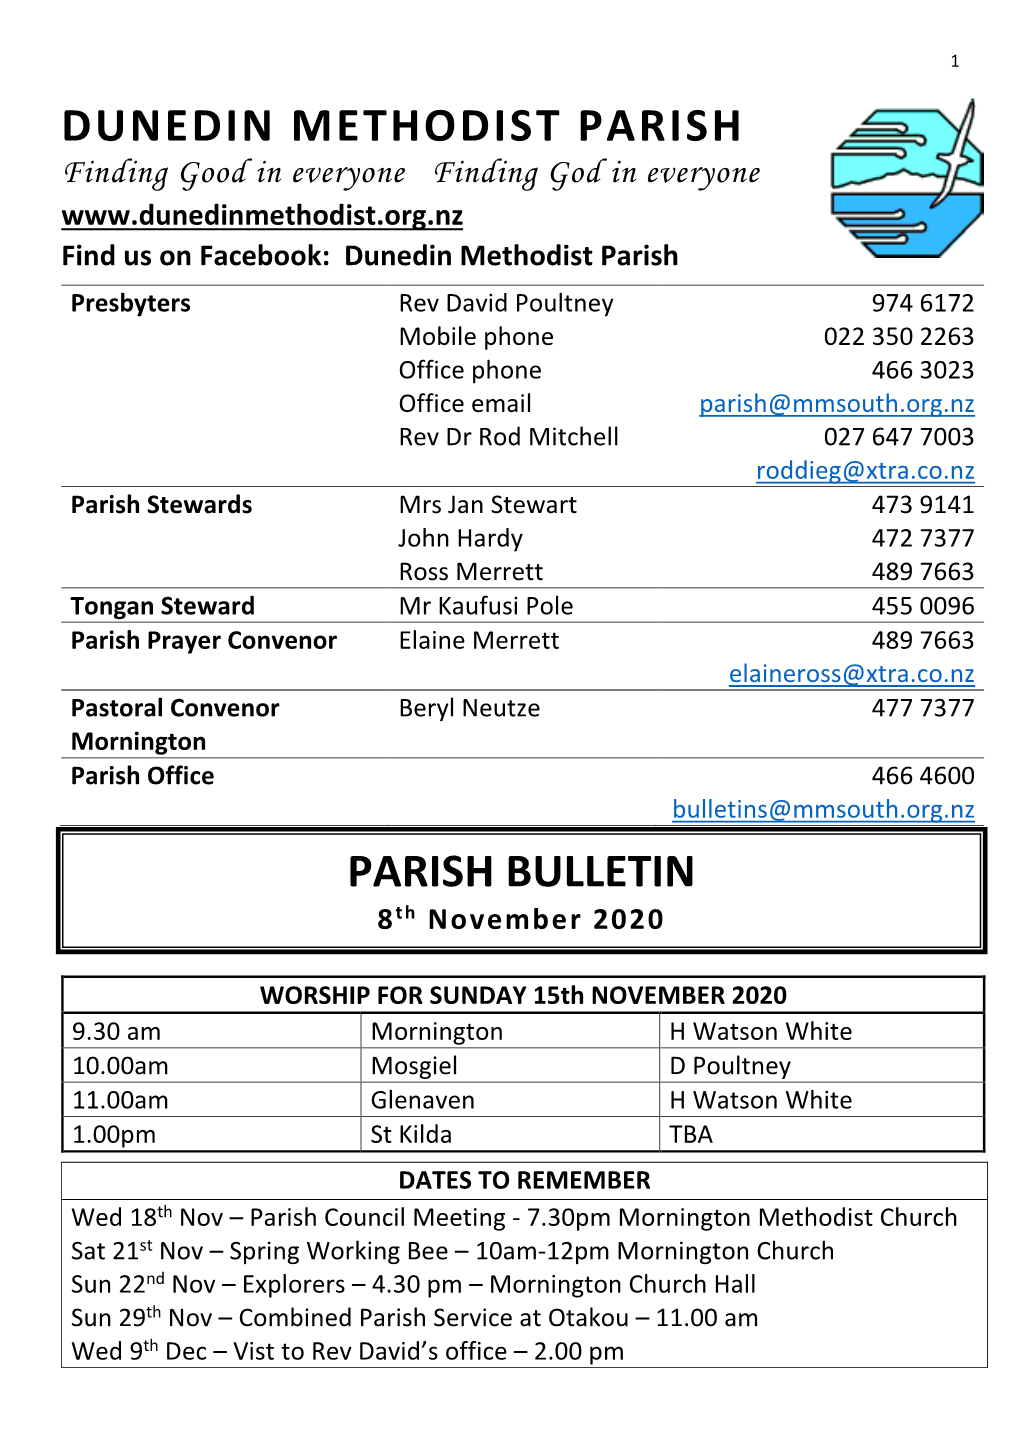 Dunedin Methodist Parish Parish Bulletin